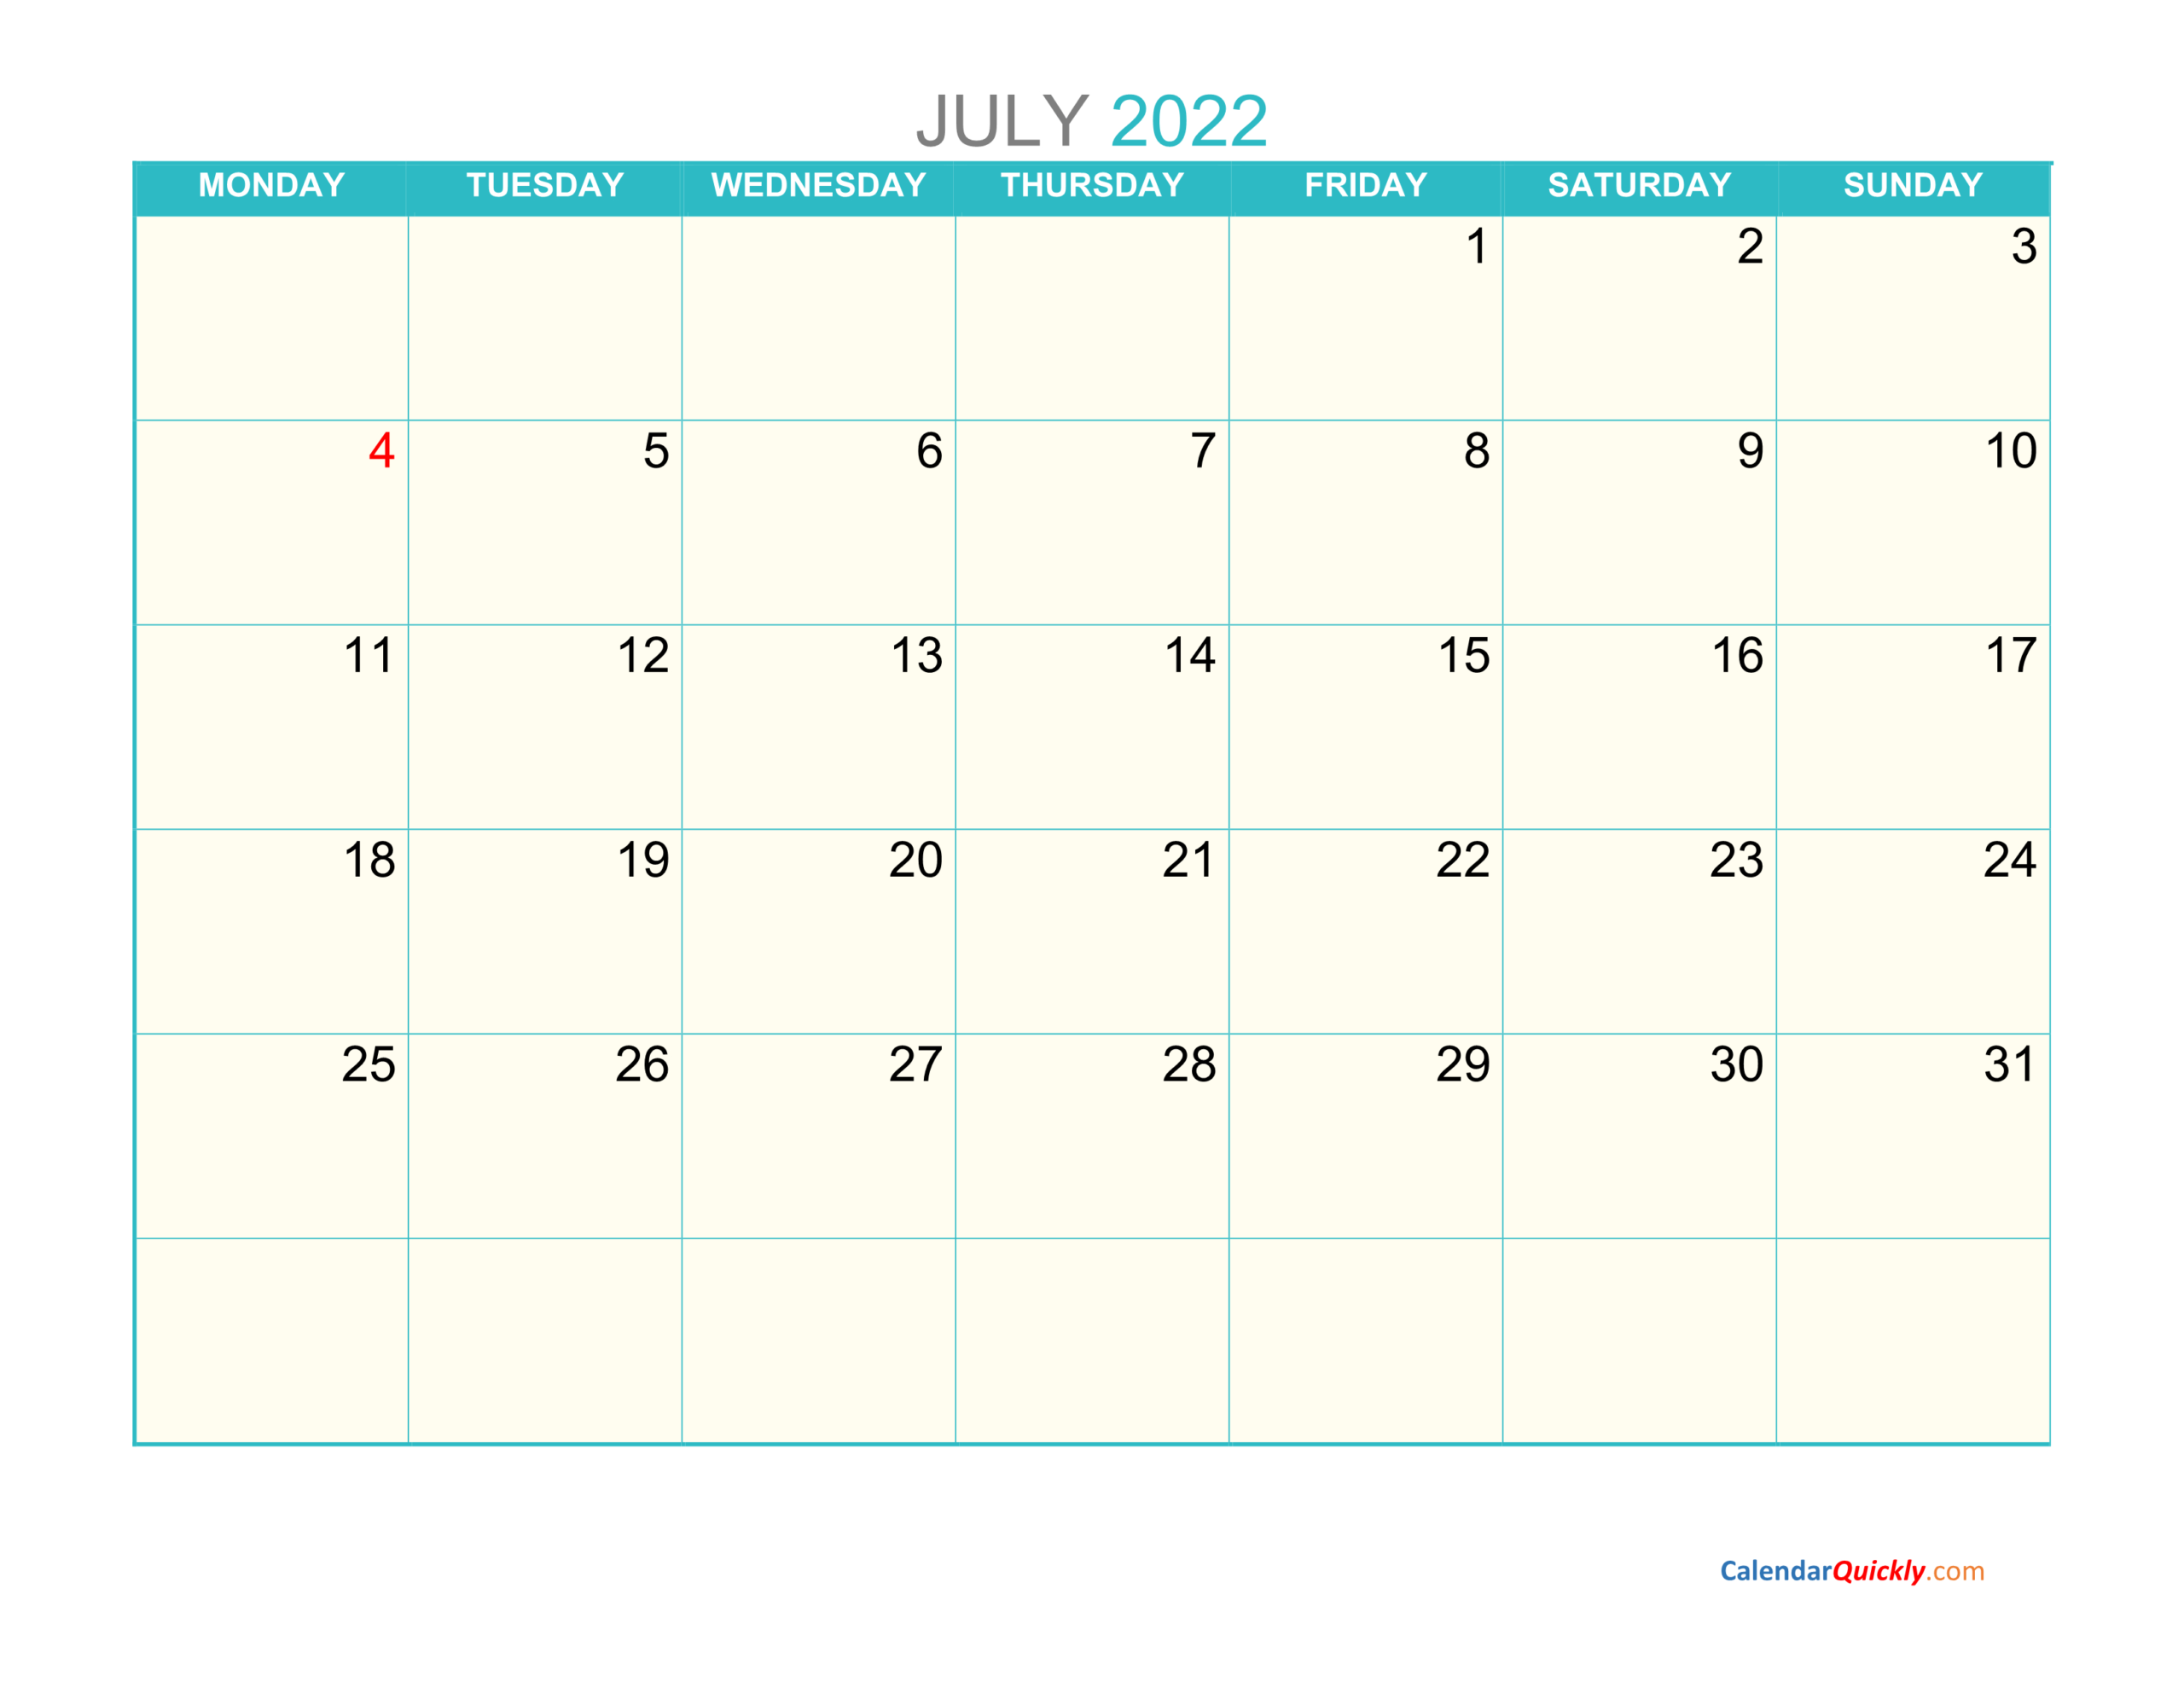 Get Calendar For July 2022